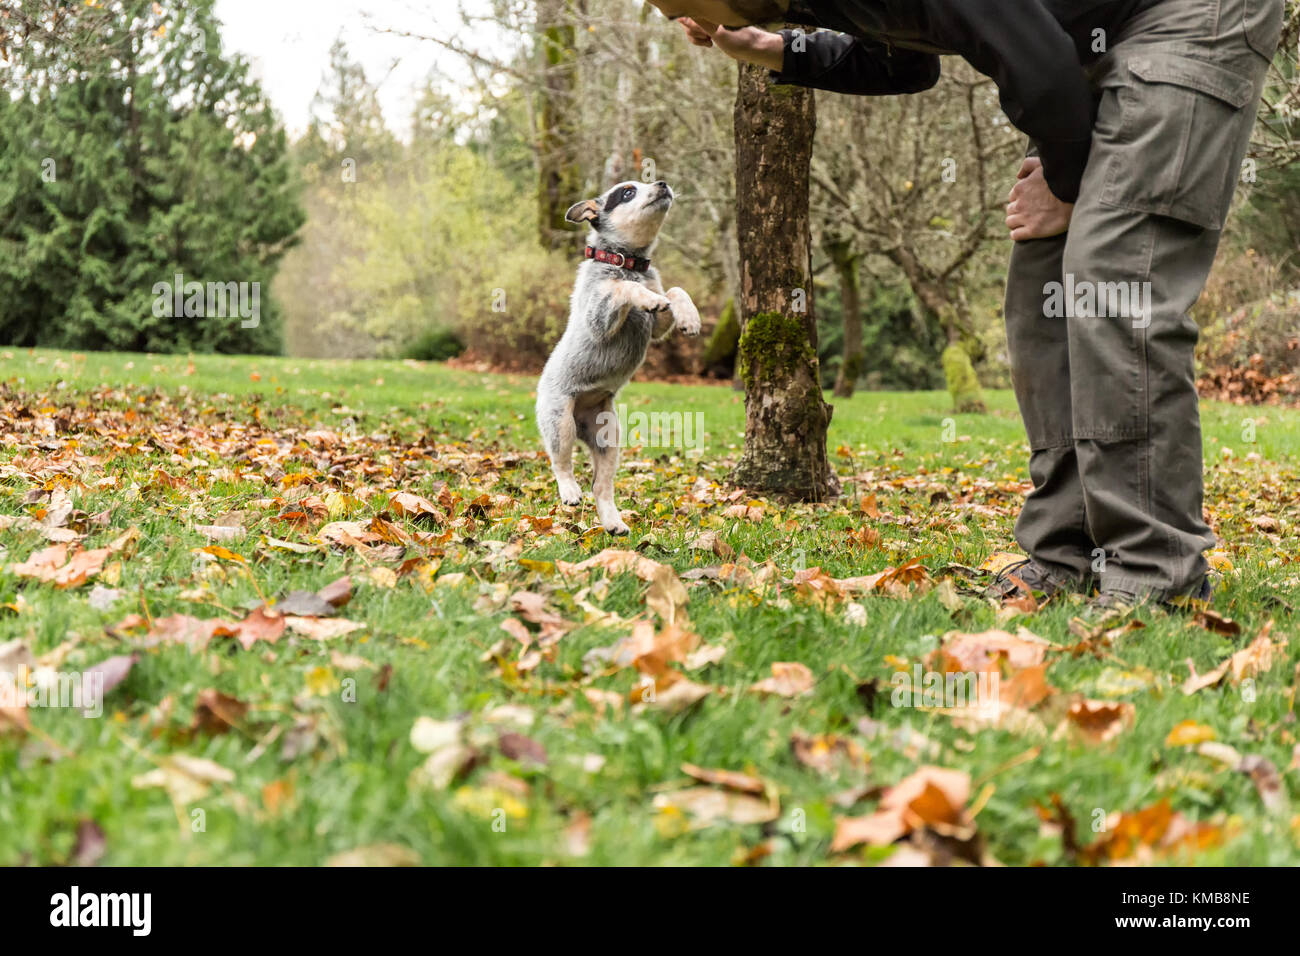 L'uomo si allenava 'Lilly', il suo cucciolo australiano di Cattledog di 10 settimane, per saltare in su, a Issaquah, Washington, USA. Foto Stock